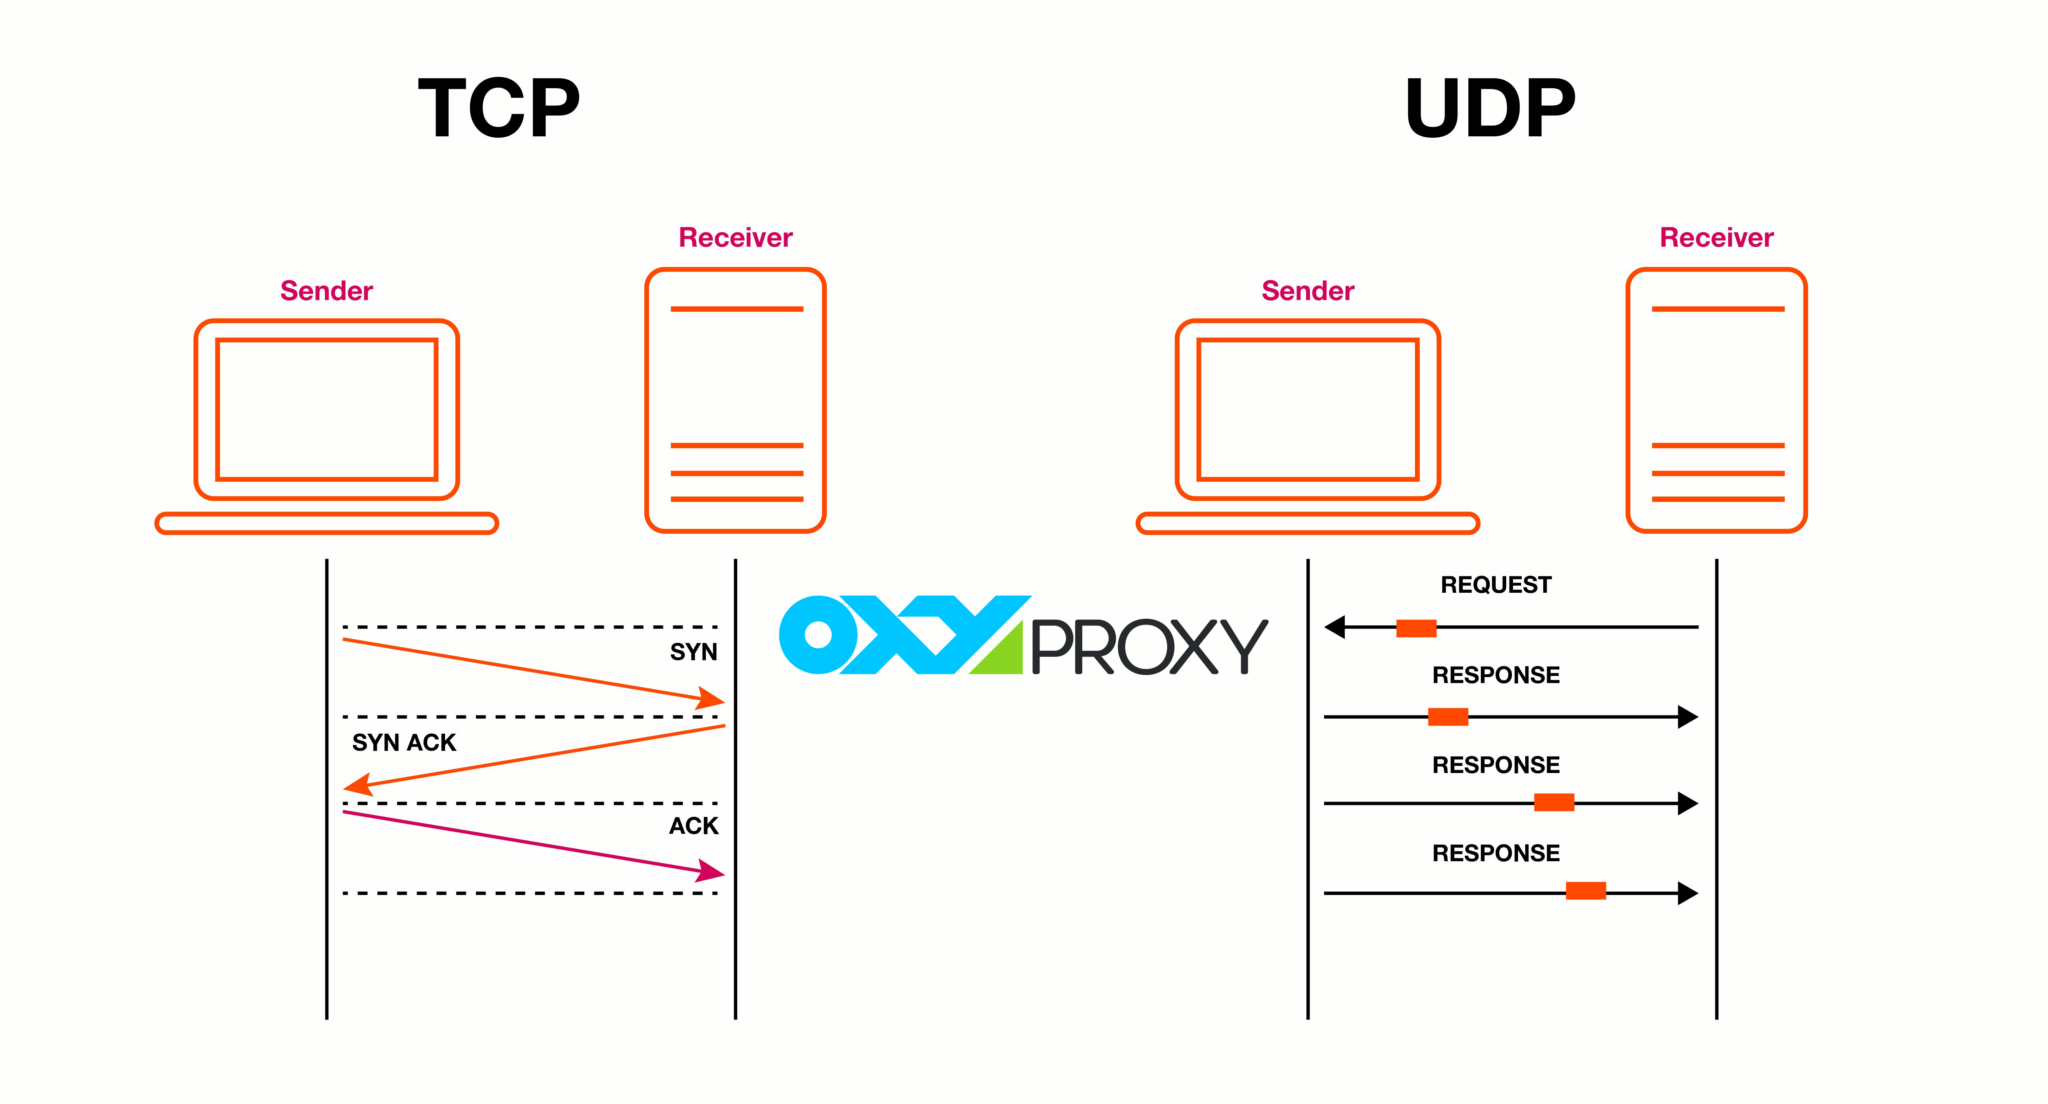 उपयोगकर्ता डेटाग्राम प्रोटोकॉल (यूडीपी)